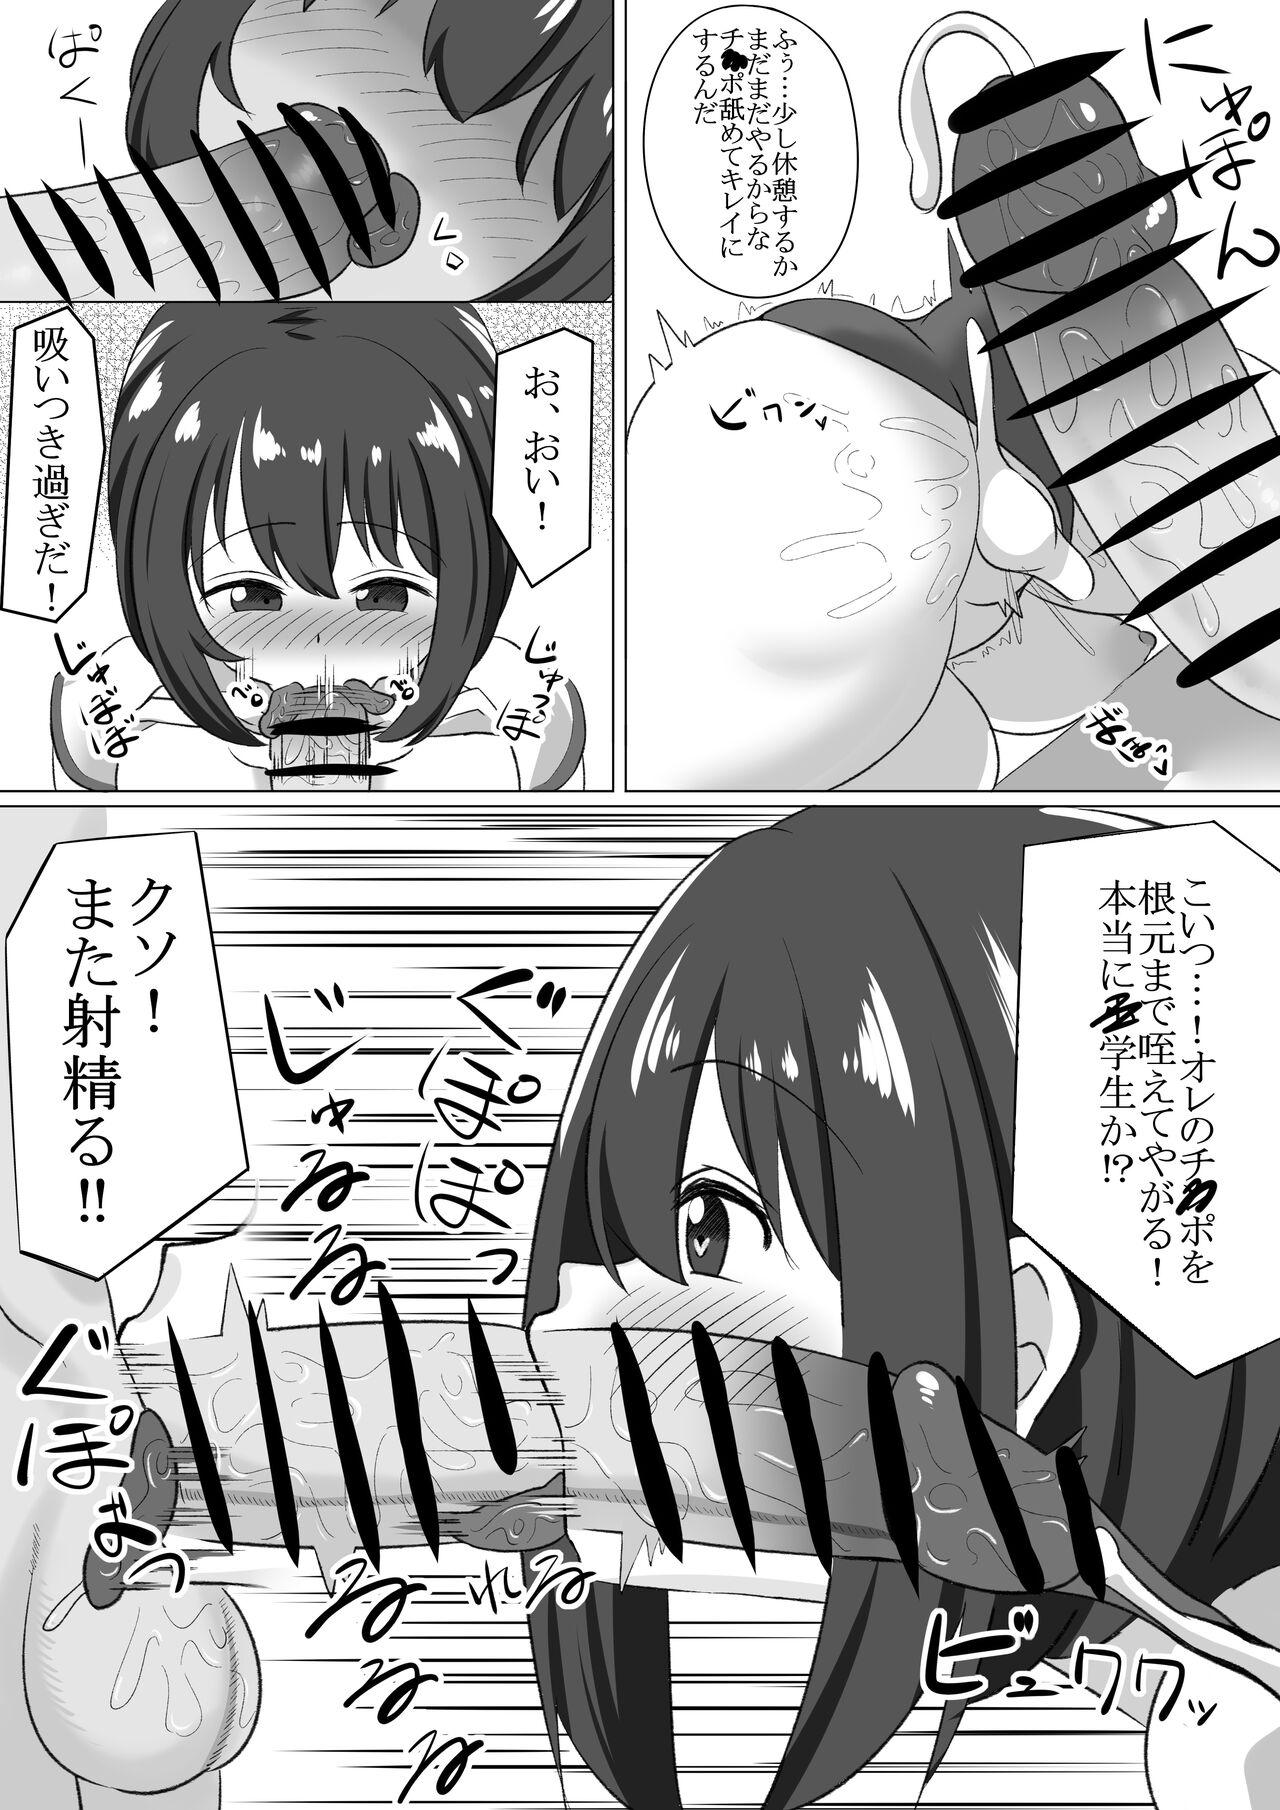 Loli to Sensei ga Ecchi suru Manga 11